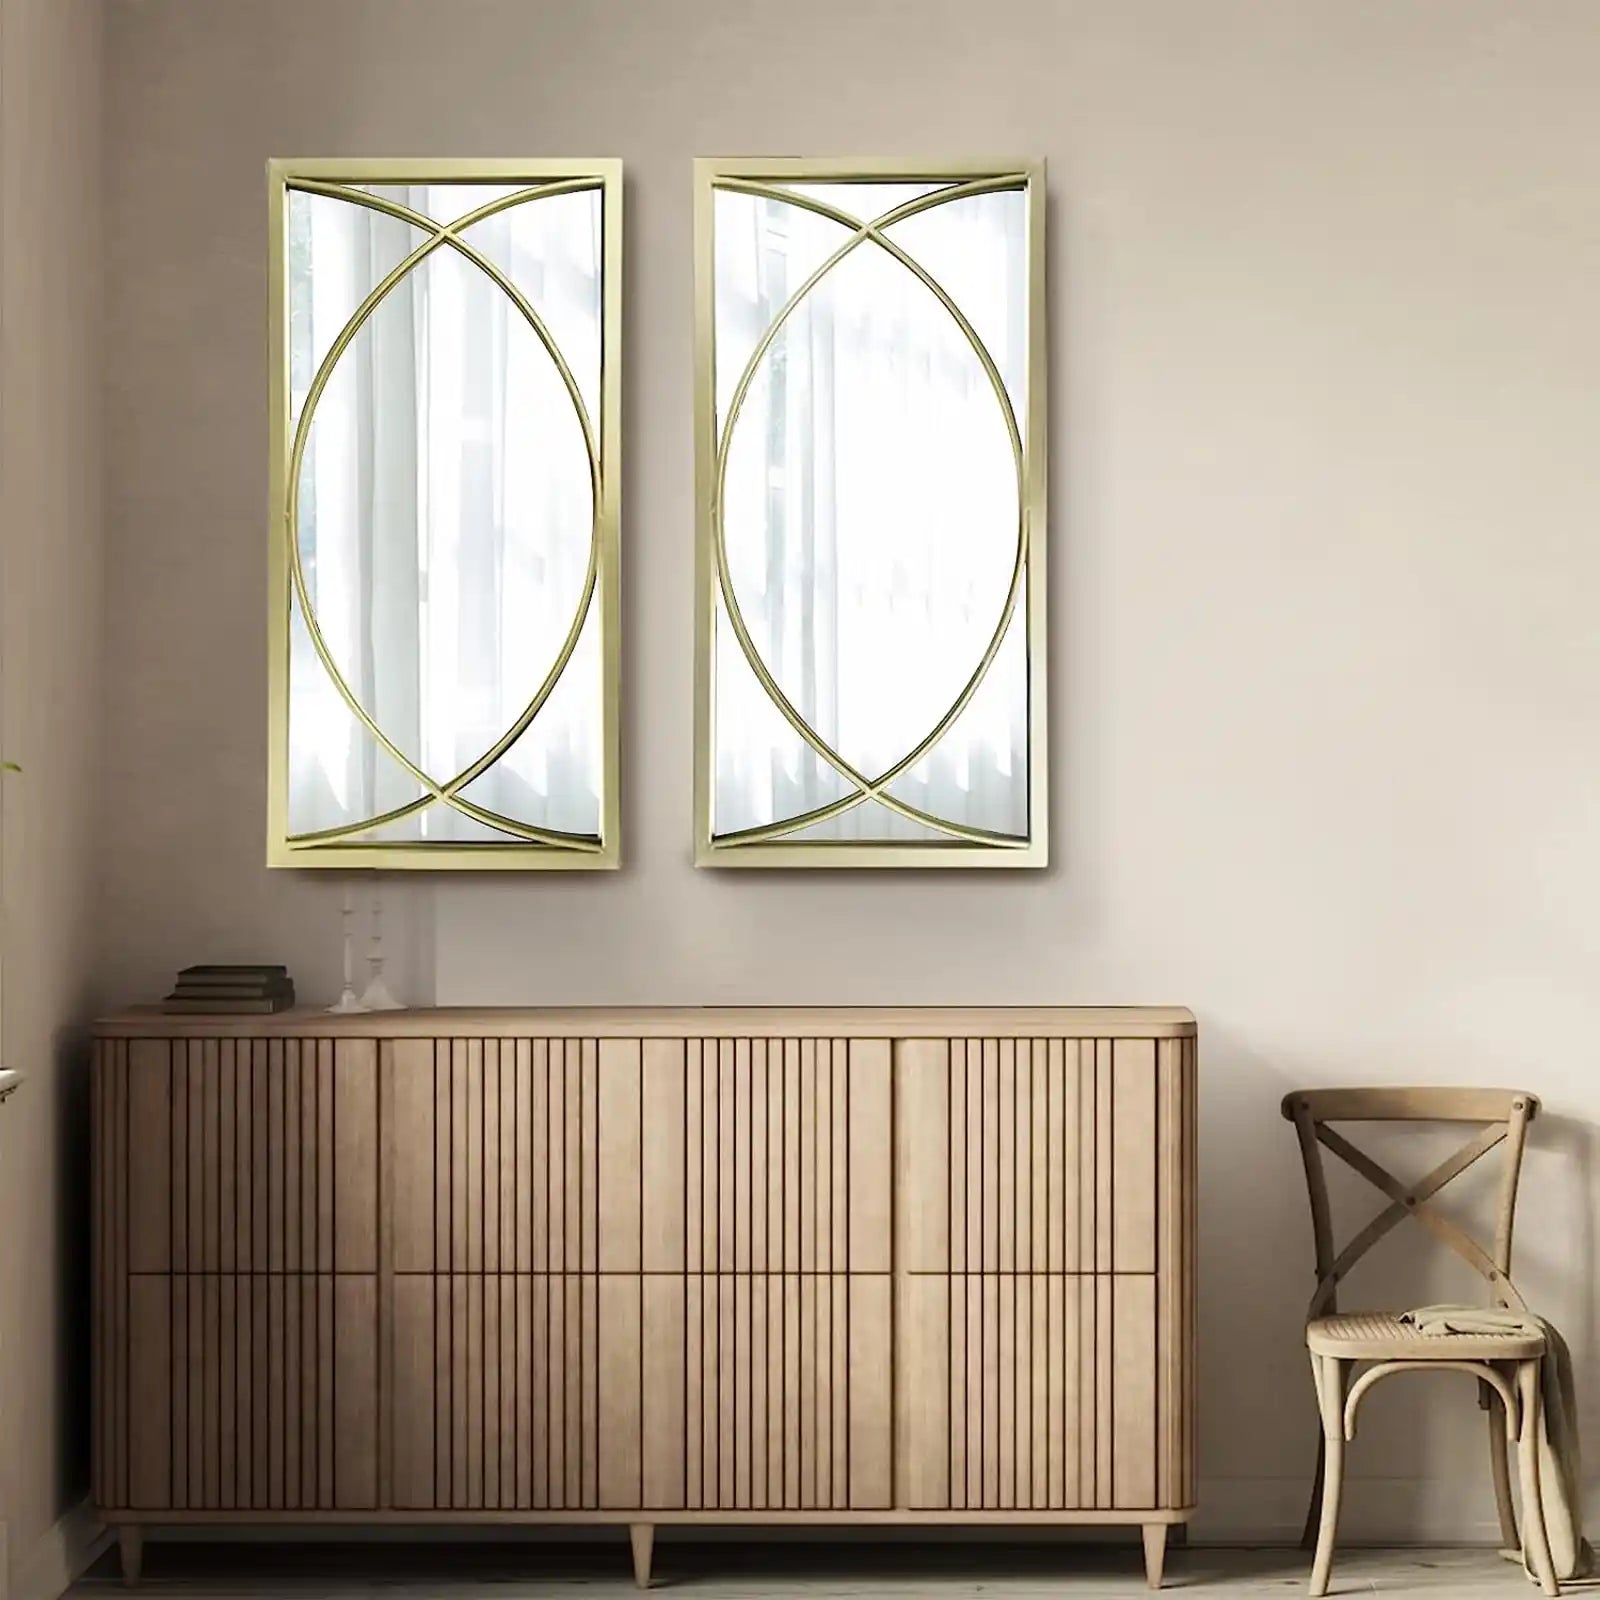 Espejo de pared rectangular dorado con marco de metal, juego de espejos de pared decorativos, espejos colgantes para sala de estar, dormitorio, baño, entrada, paquete de 2 